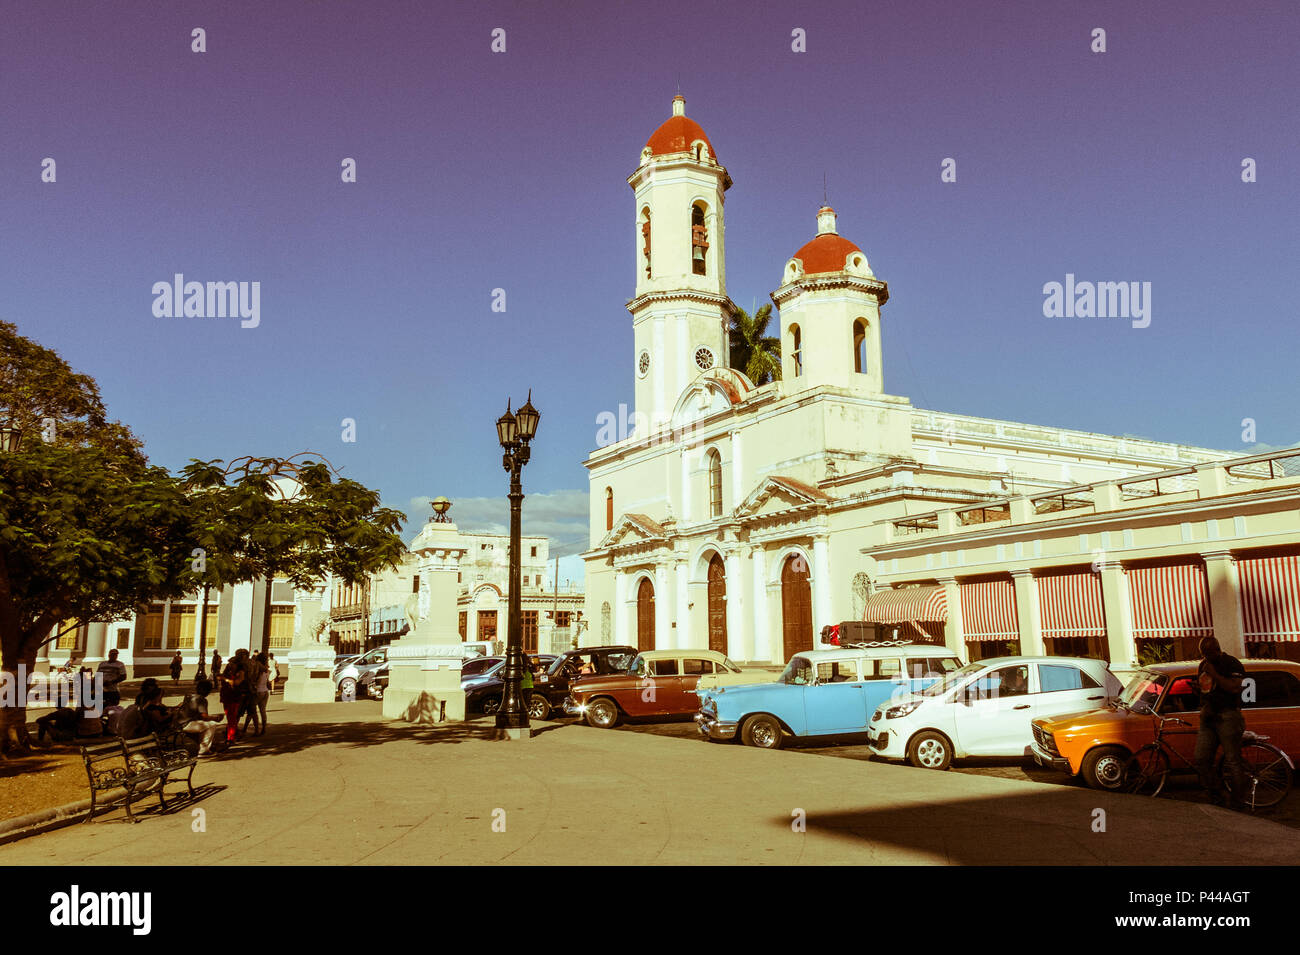 CIENFUEGOS, CUBA - 3 janvier 2017 : voitures anciennes à Jose Marti Park, la place principale de Cienfuegos, Cuba. Image avec effet d'antan et vintage Banque D'Images